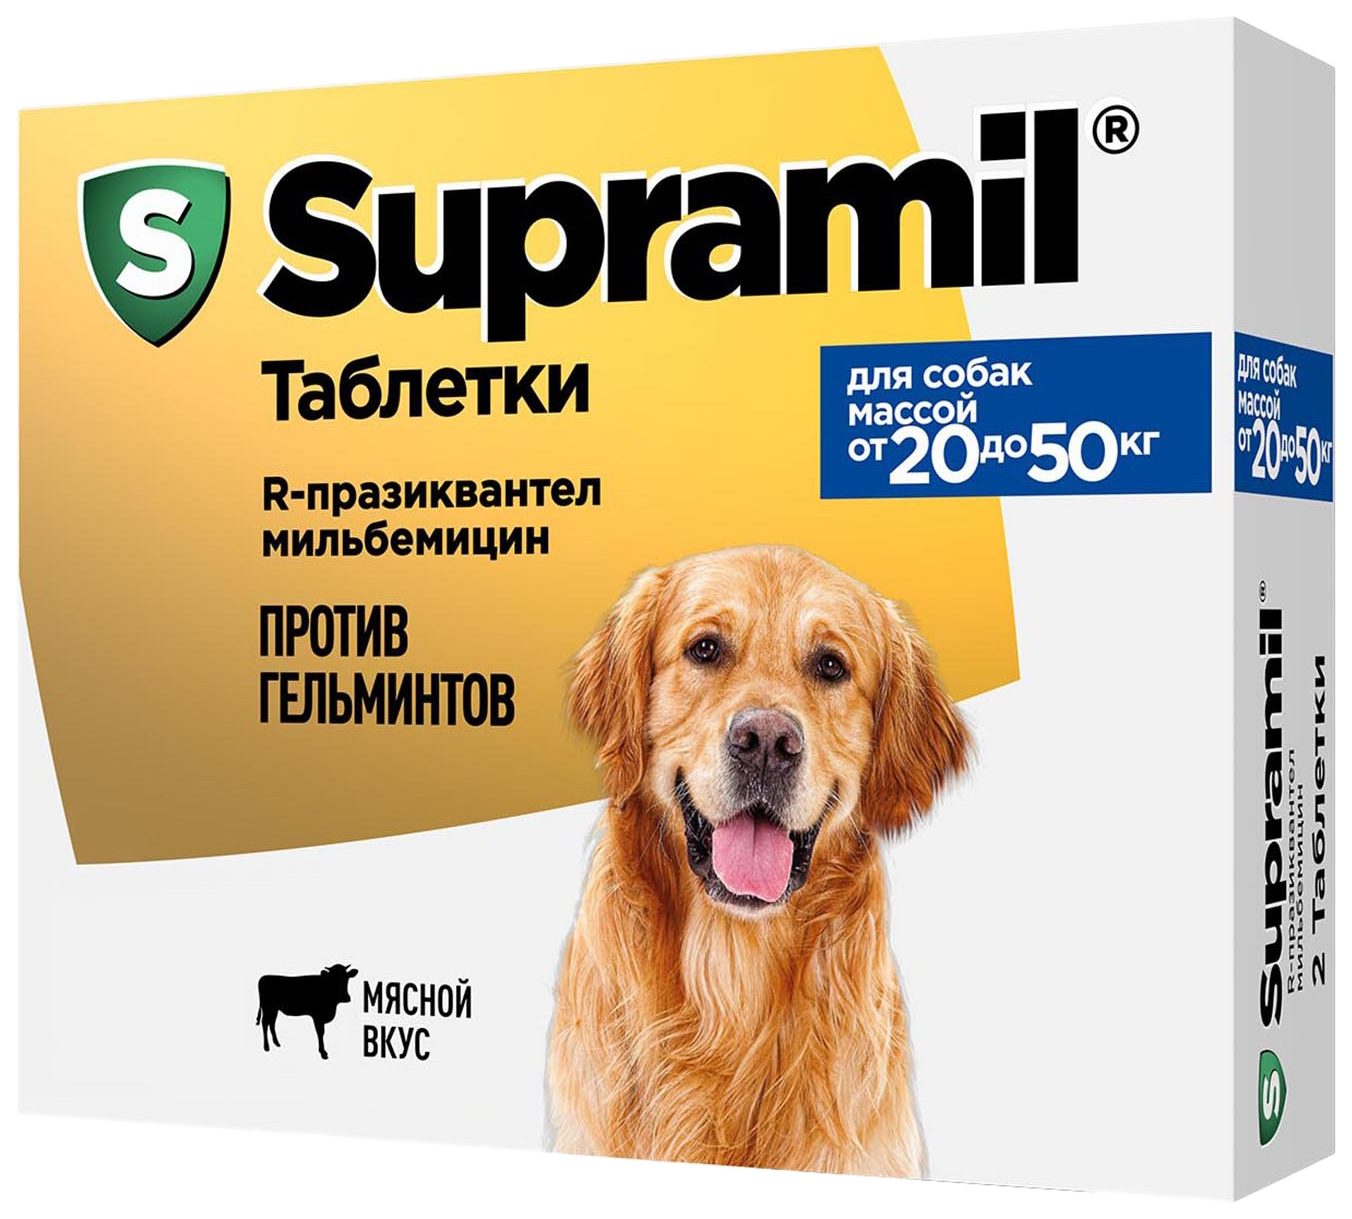 Лекарственный препарат Астрафарм Супрамил для собак массой от 20 до 50 кг 2 таблетки